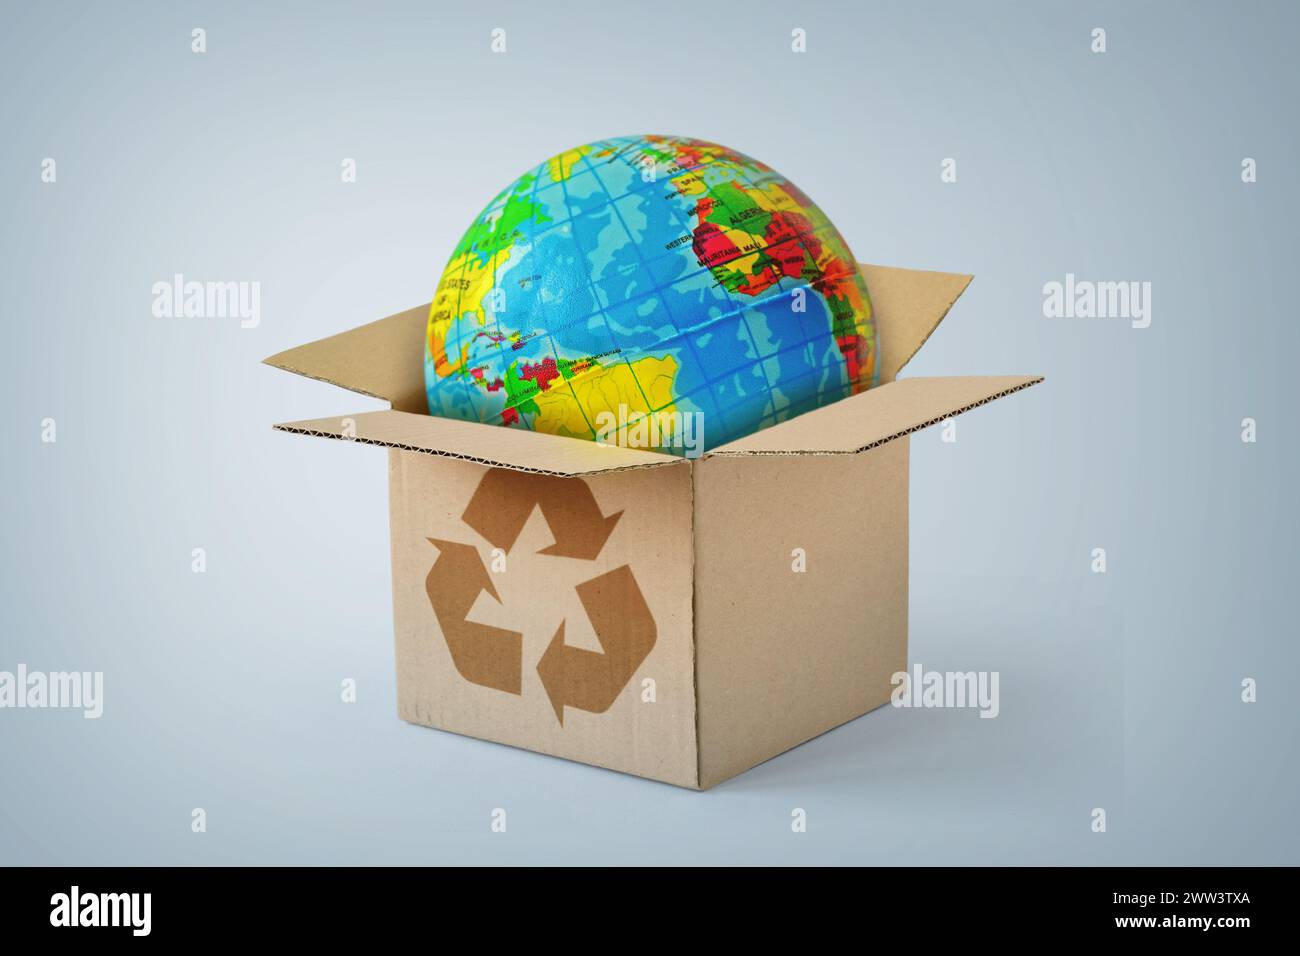 Planet Erde im Karton mit Recycling-Symbol - Konzept der Ökologie und weltweite Lieferung Stockfoto